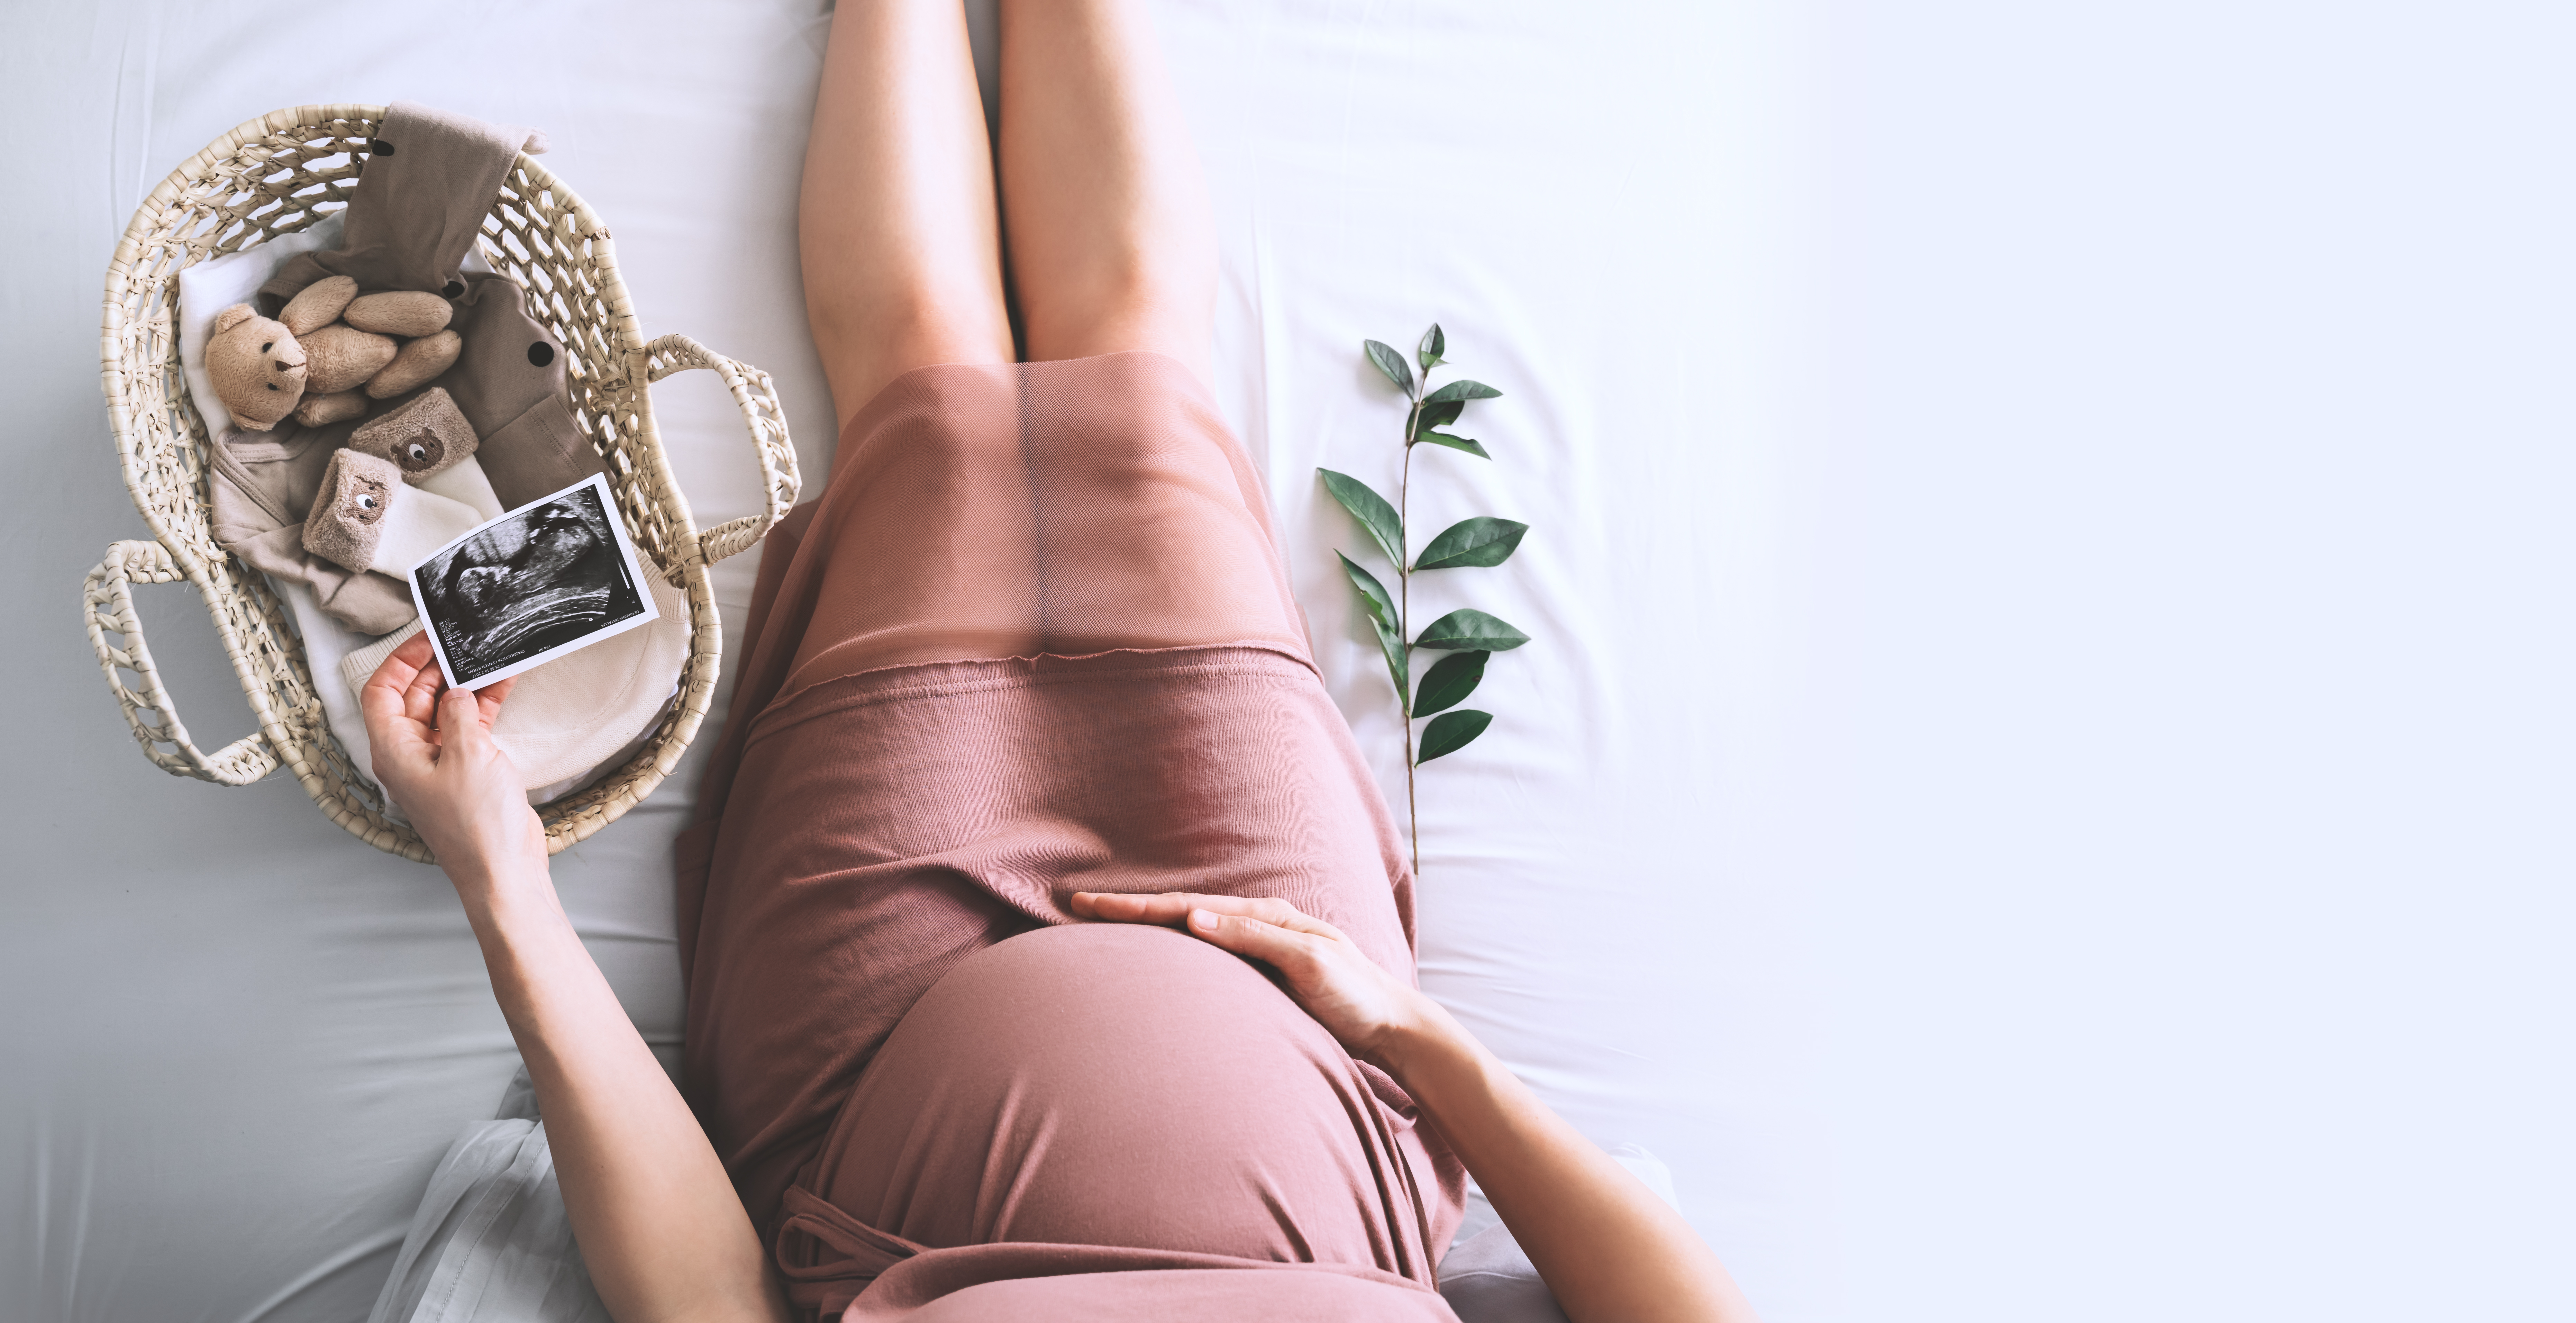 Schwangere Frau sitzt mit einem Babykorb und Babyartikeln da | Quelle: Shutterstock